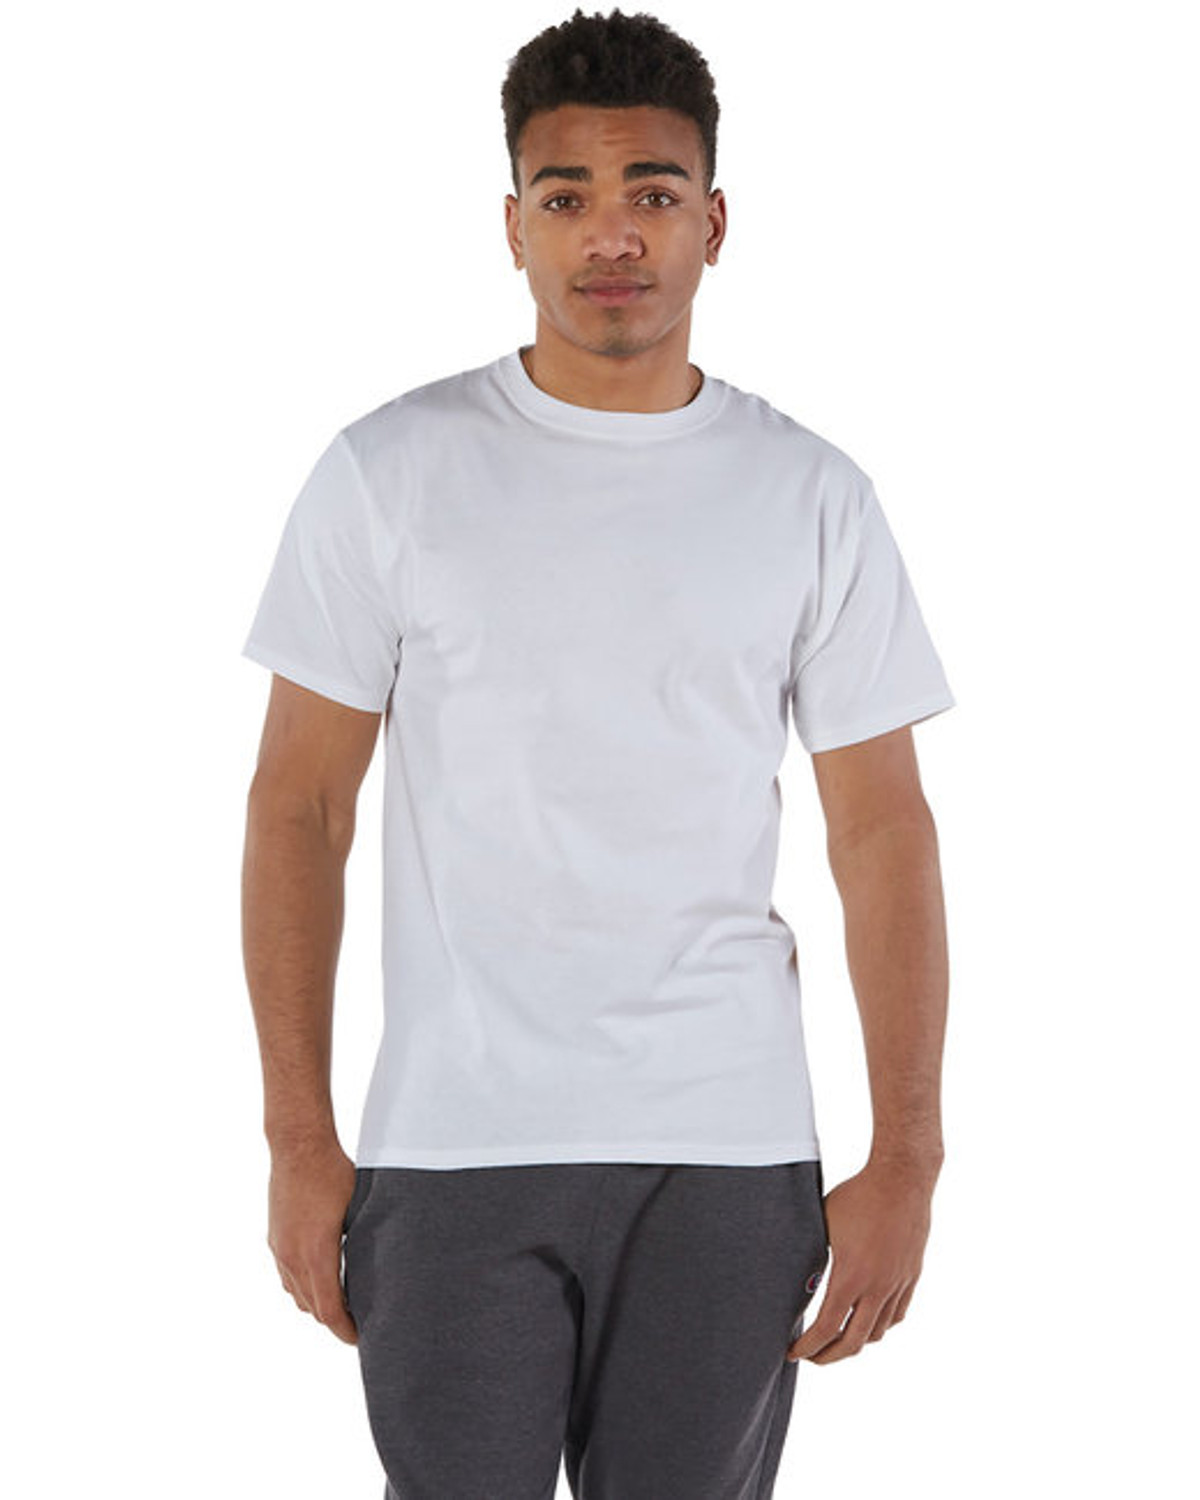 Champion Men's 5.2 oz White L/S Tagless T-Shirt